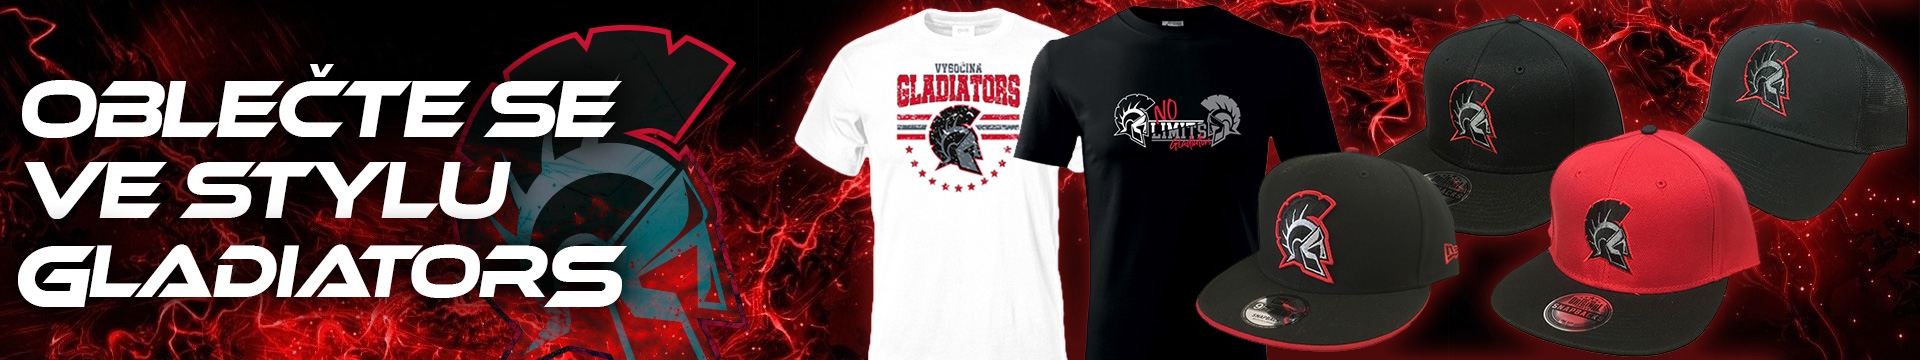 Vysočina Gladiators Fanshop